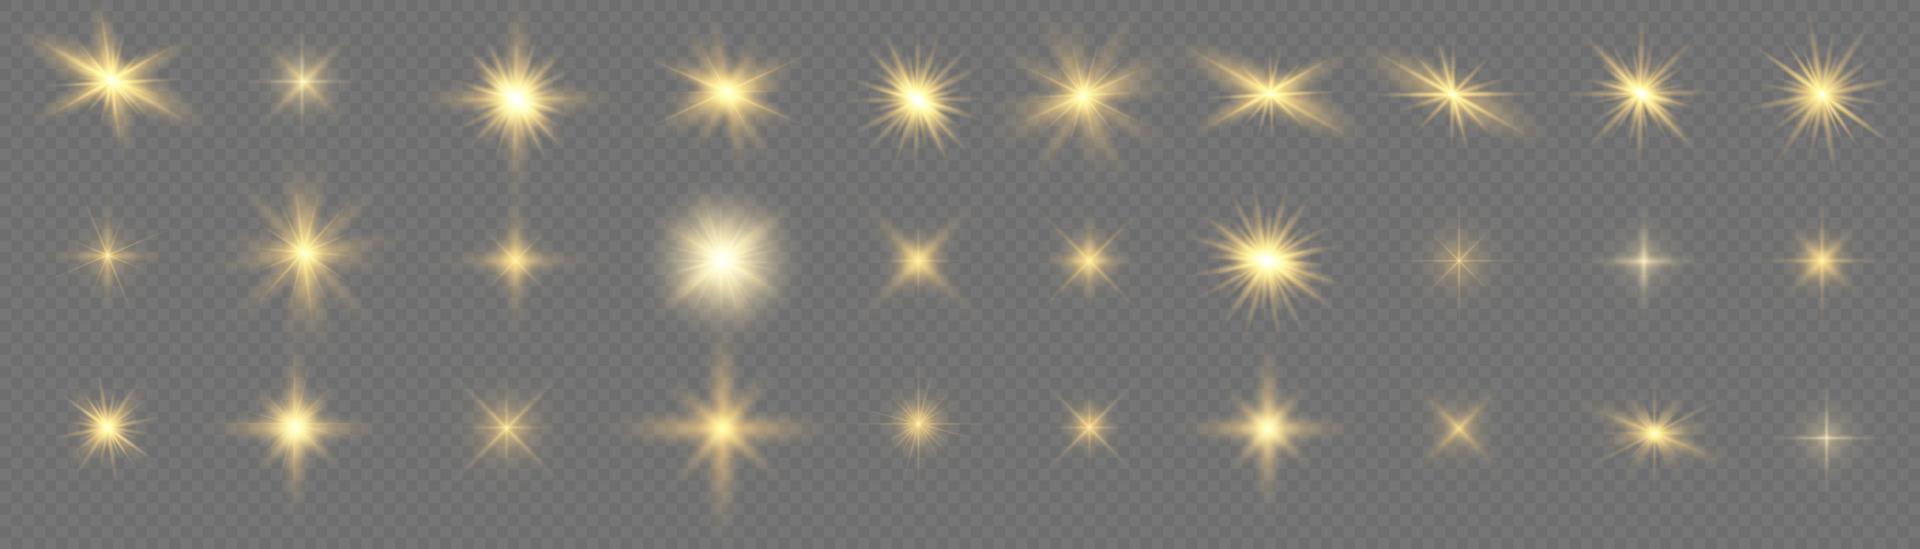 glühen isolierter weißer lichteffektsatz, linseneffekt, explosion, glitzer, linie, sonnenblitz, funken und sterne. abstraktes spezialeffektelementdesign. Glanzstrahl mit Blitz vektor